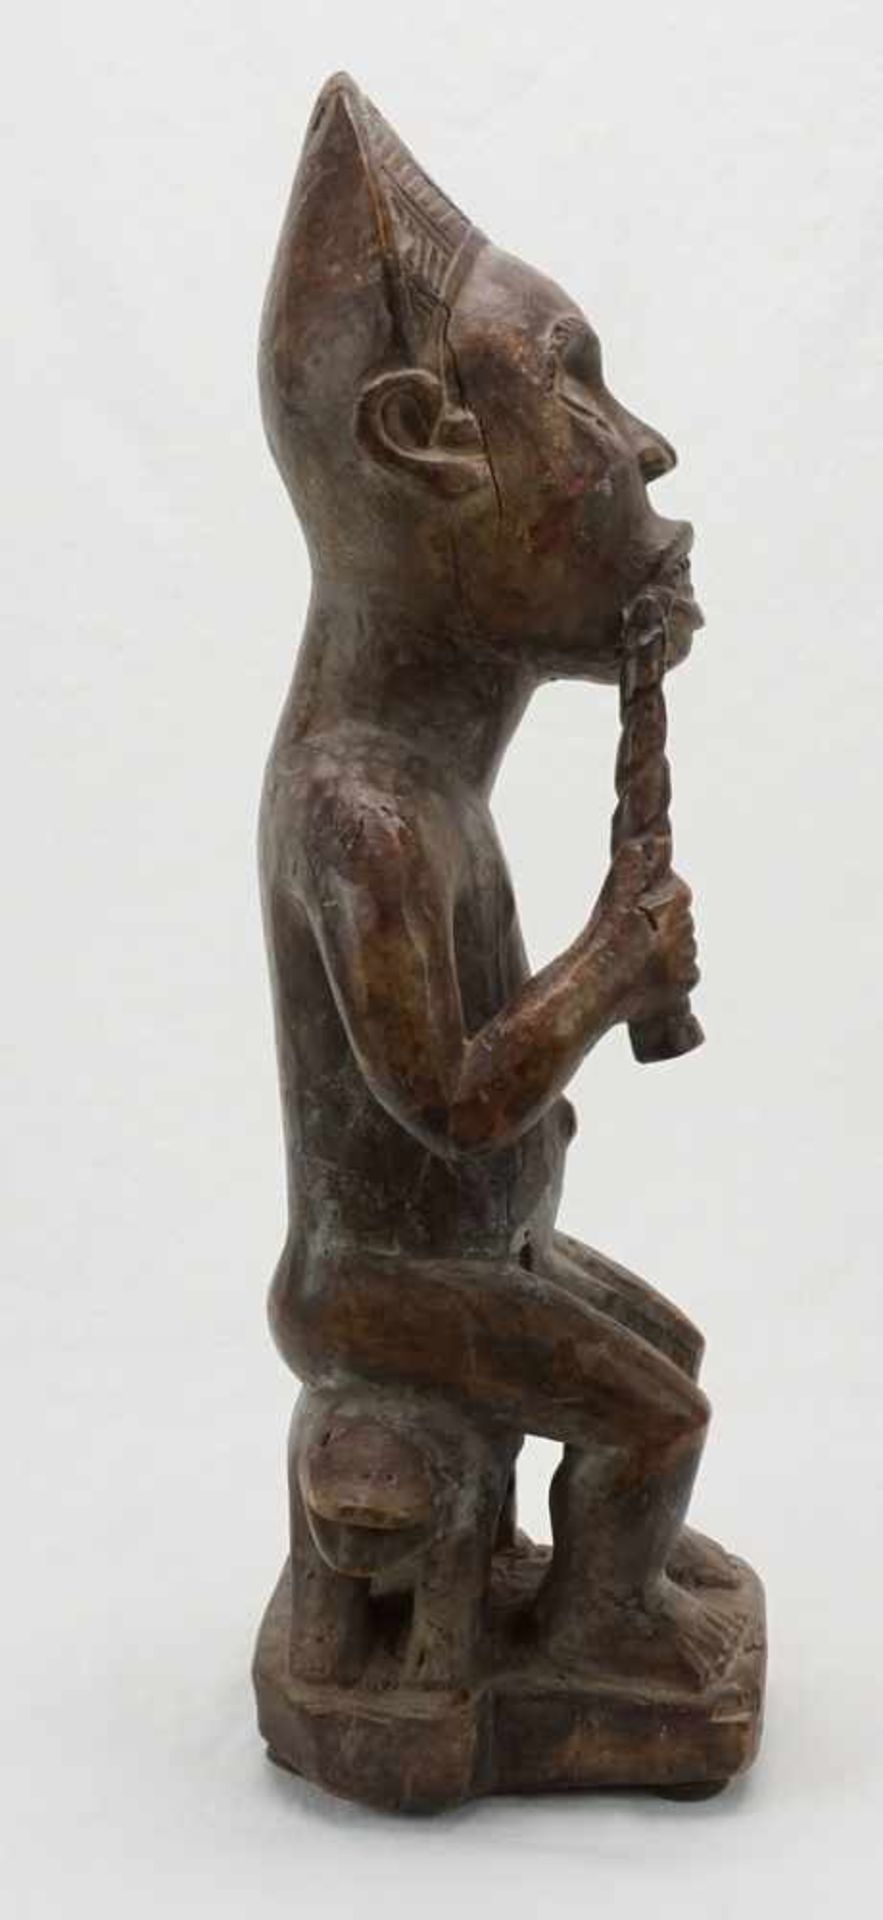 Vili Würdenträger, Gabun, DR Kongo, 20. Jh.Holz, König auf Thron sitzend, in der rechten Hand eine - Bild 3 aus 5